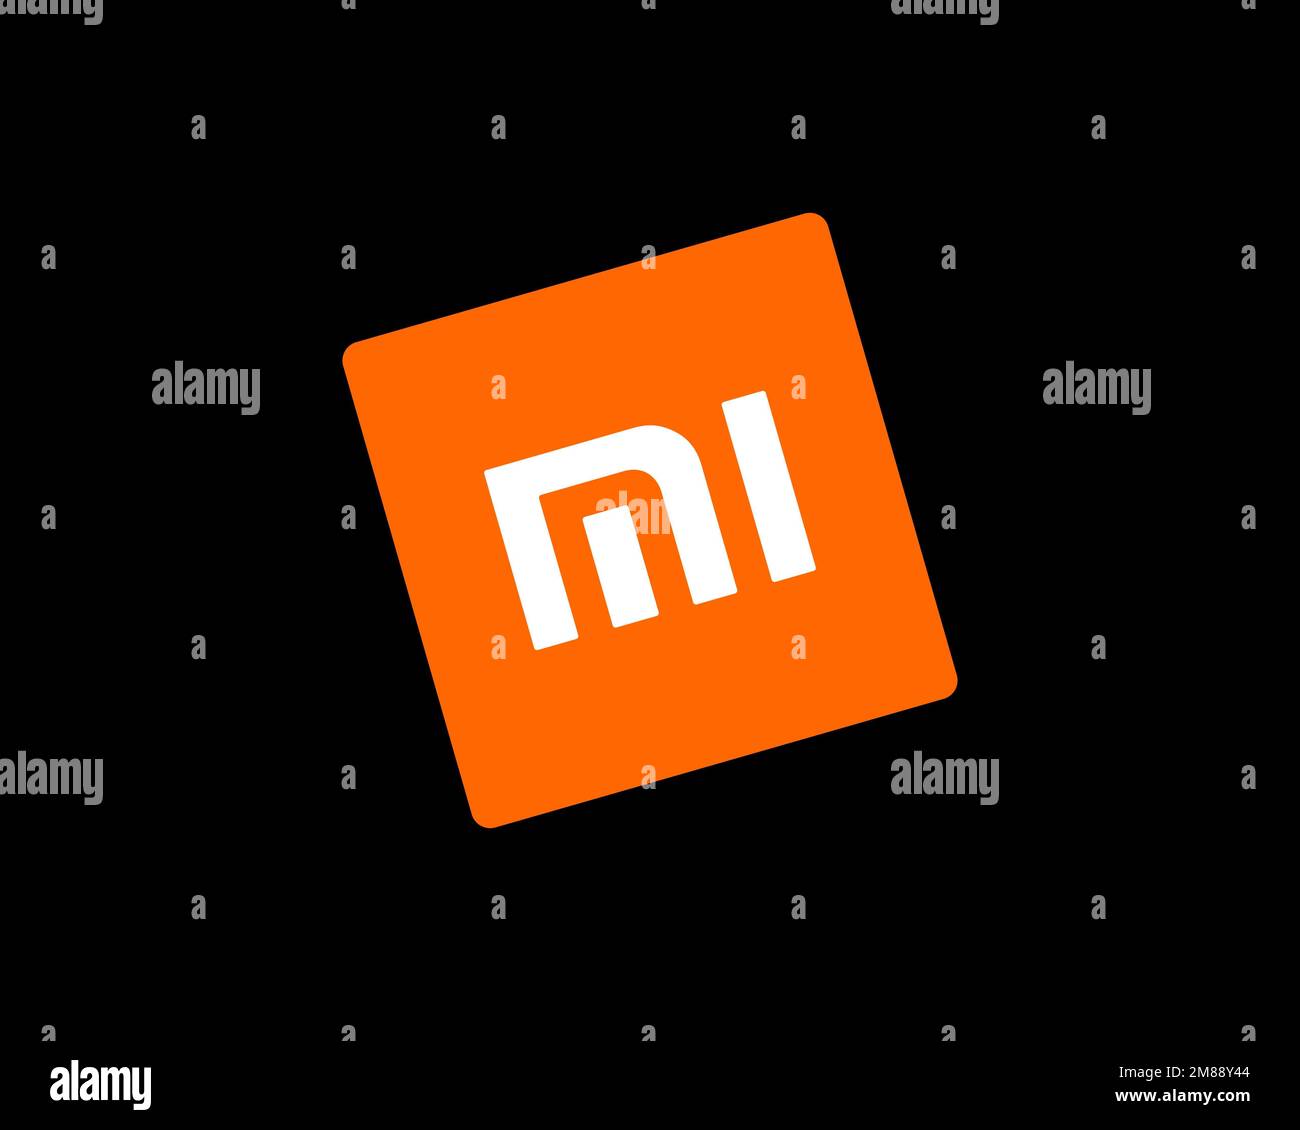 Xiaomi logo trên nền đen- một phong cách hoàn toàn mới lạ. Như một sắc đen tối thượng, nền đen tạo nên được một bầu không khí trang trọng, sang trọng nhưng cũng đầy bí ẩn. Hãy để cho logo Xiaomi trên nền đen mang bạn khám phá một thế giới mới như thật!